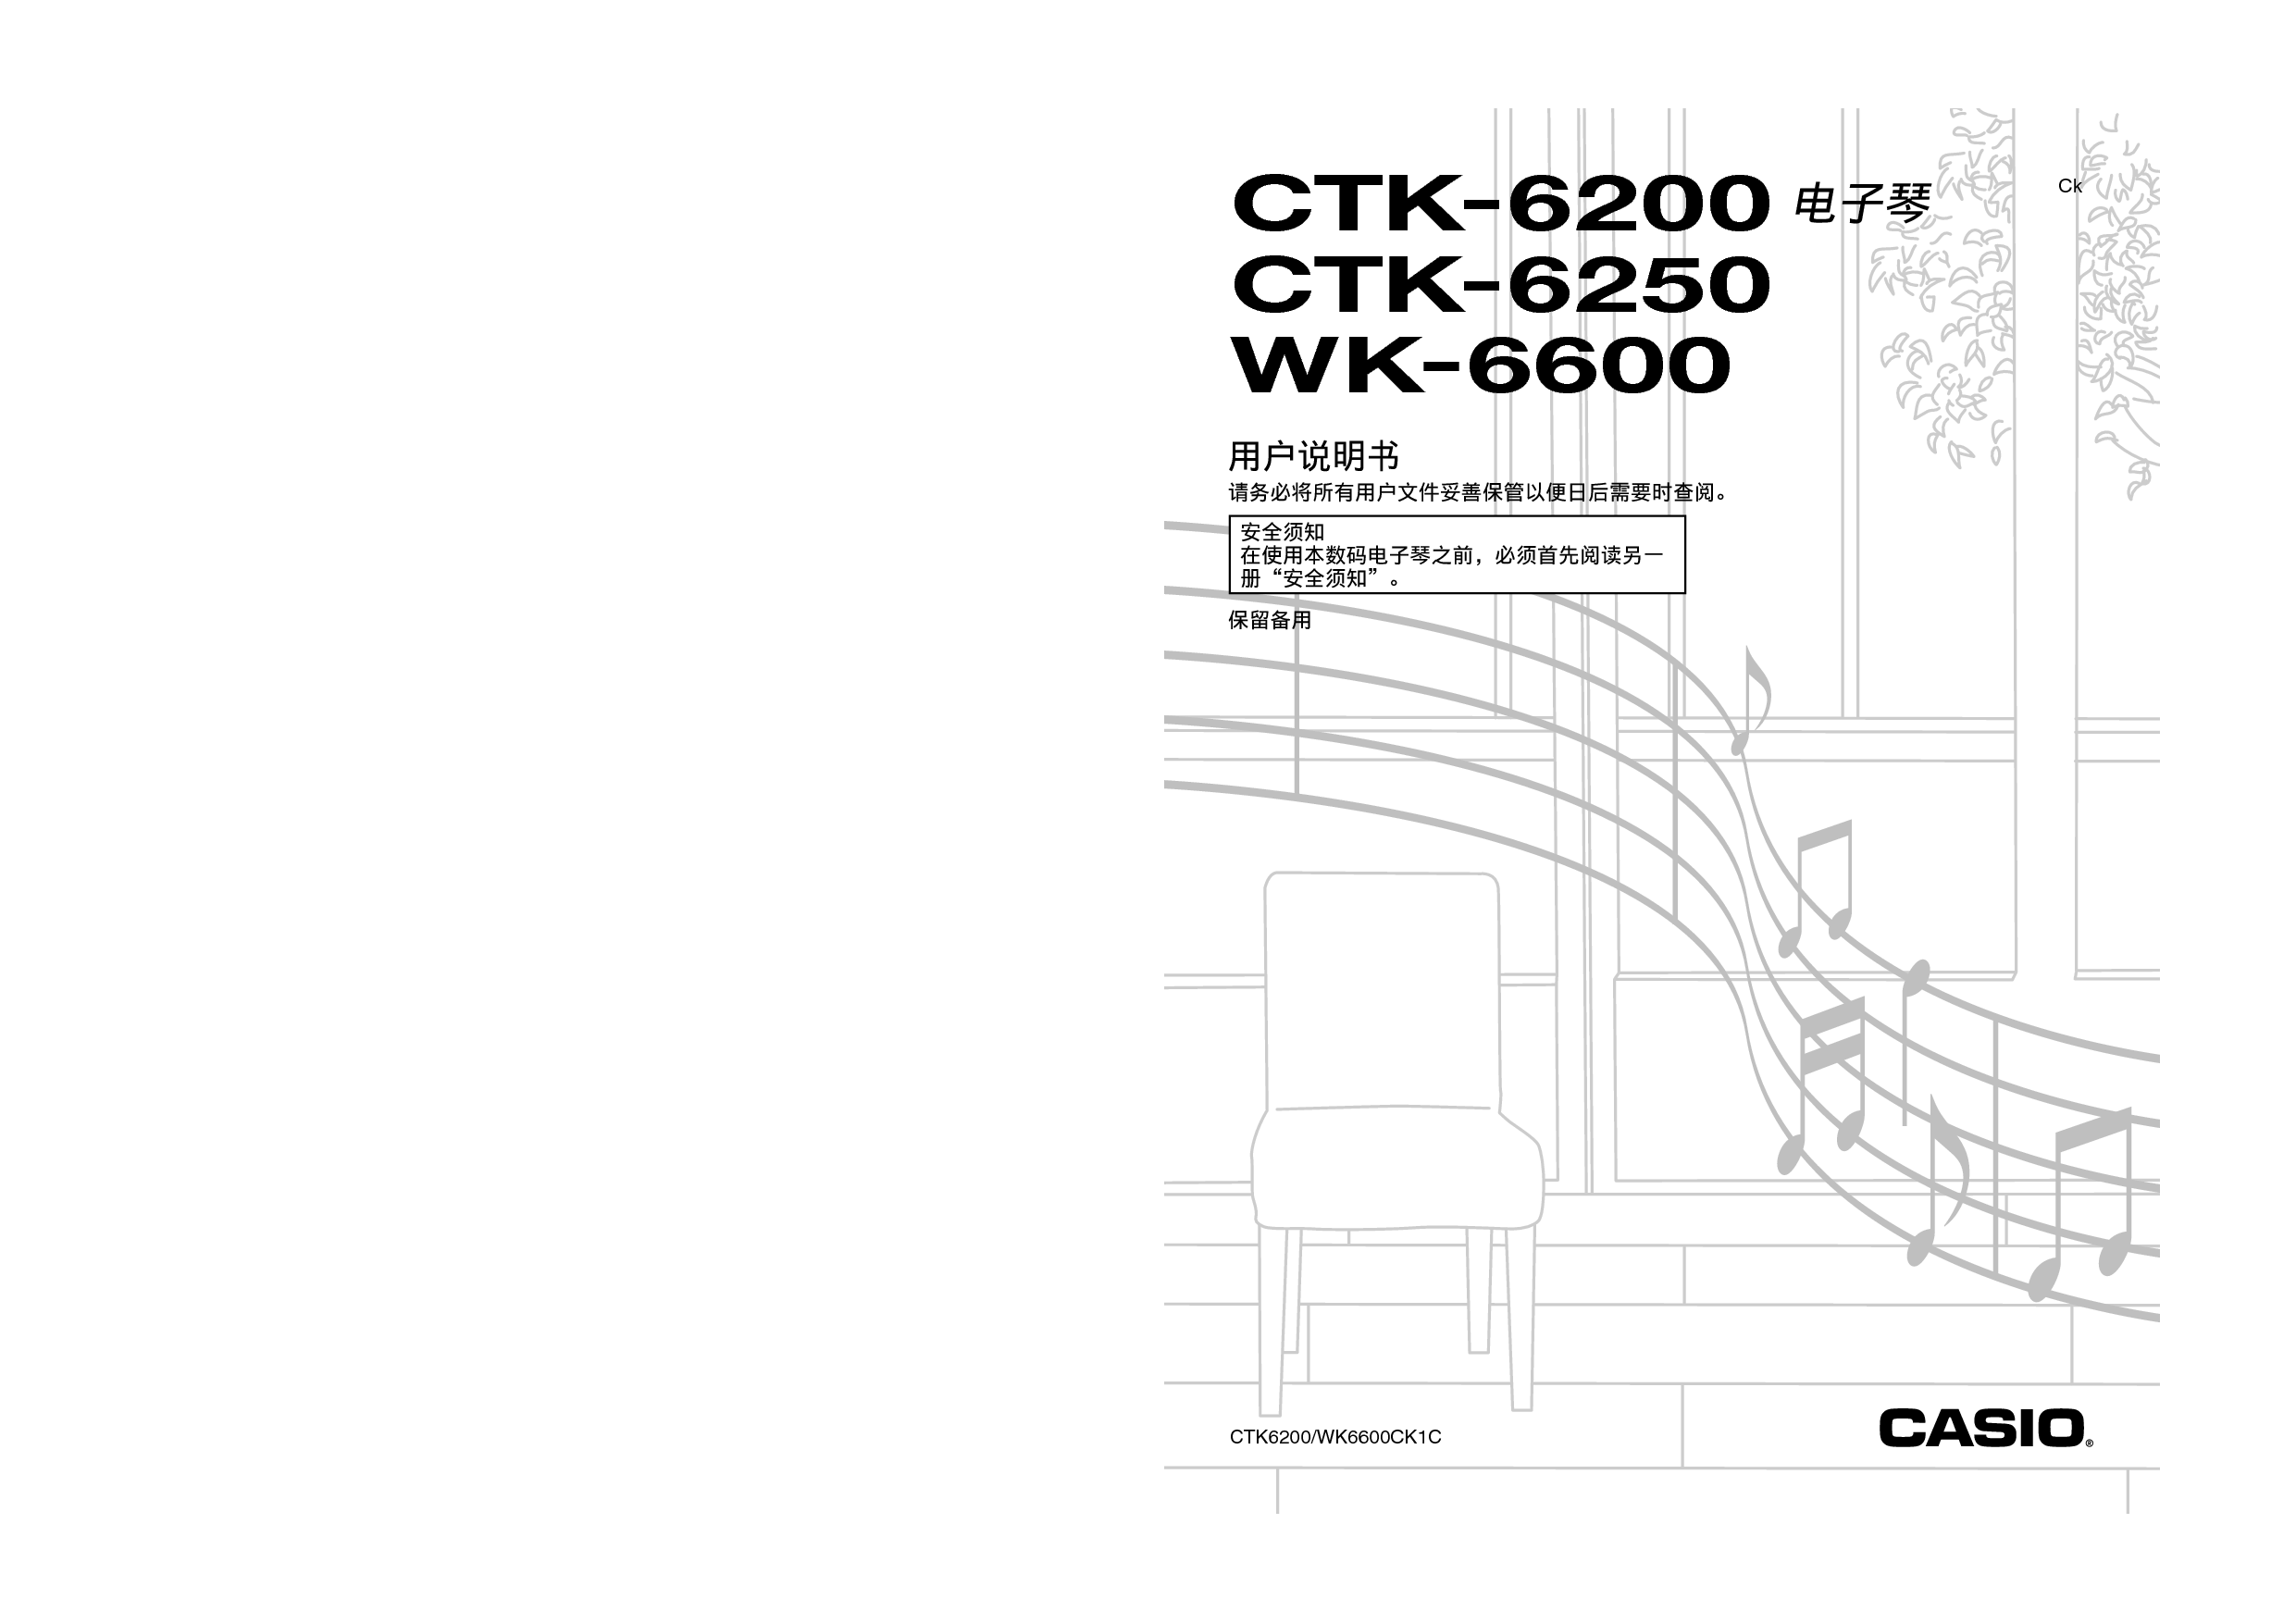 卡西欧 Casio CTK-6200 使用说明书 封面